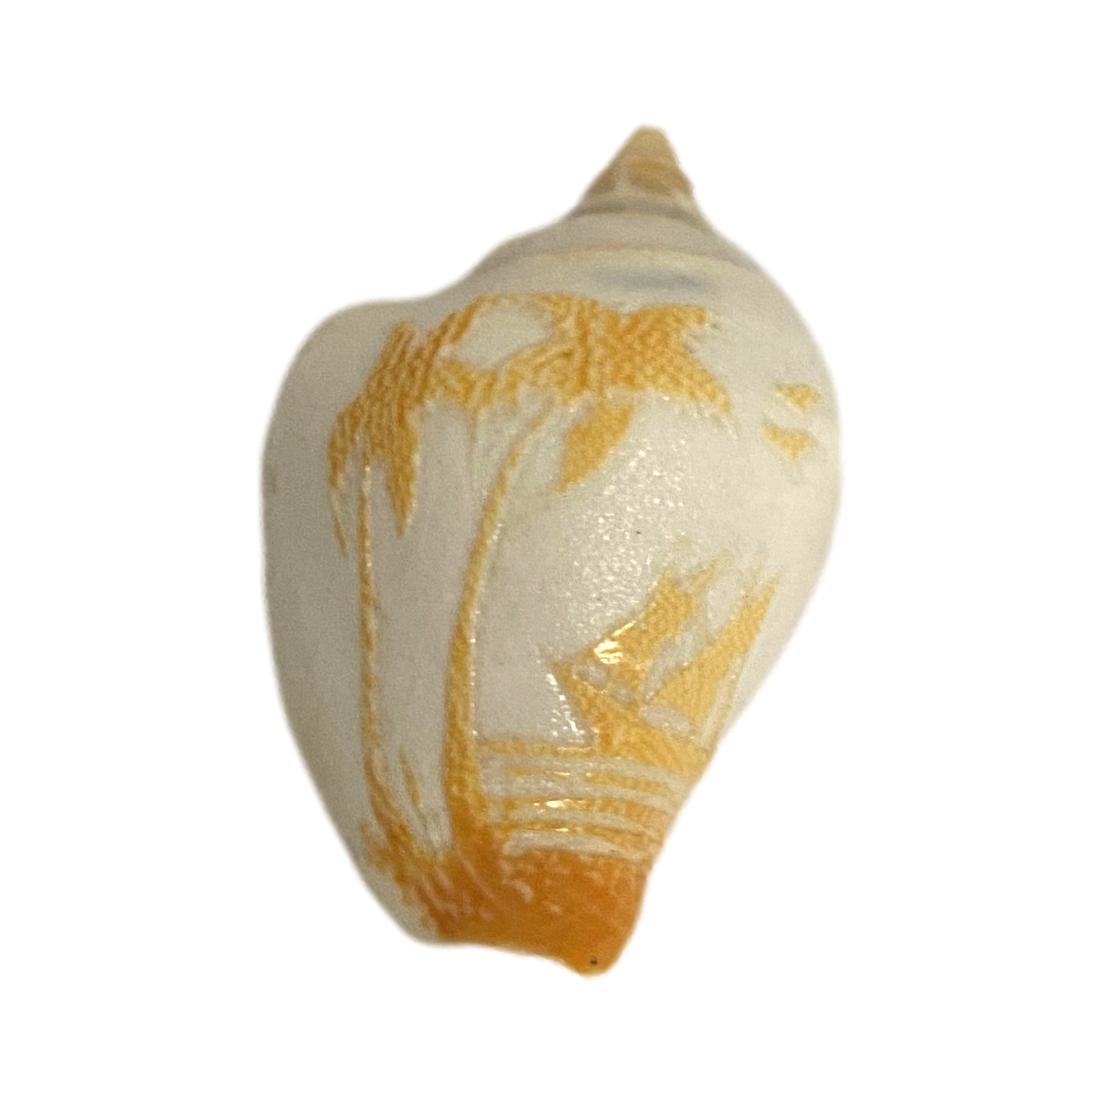 Small Decorative Shell